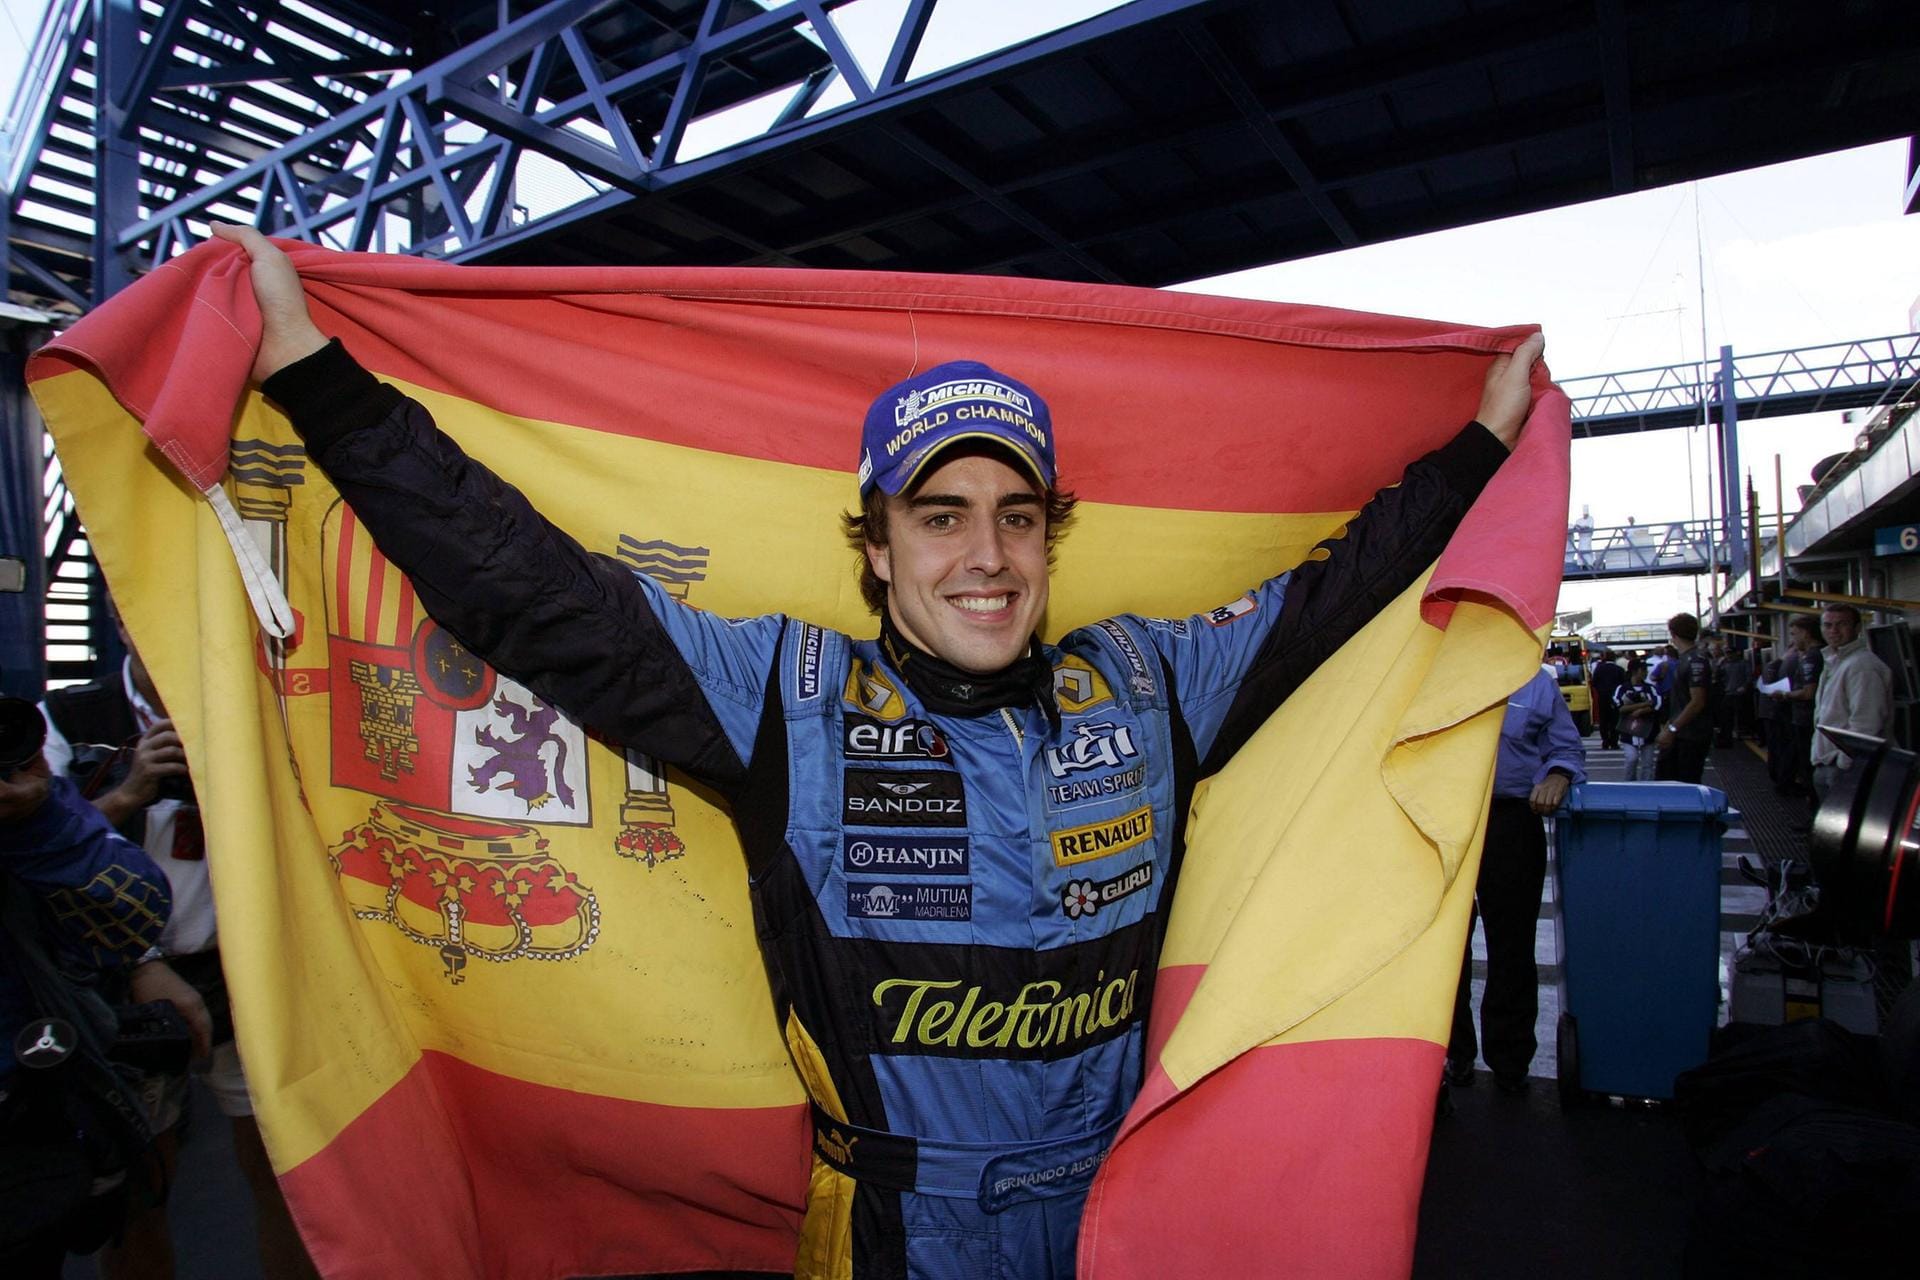 Der spanische Renault-Fahrer Fernando Alonso beendete schließlich die Schumacher-Dominanz. Unter Teamchef Flavio Briatore gelangen dem Asturier zwei WM-Titel. Nach seinen beiden Titeln fuhr er in der Formel 1 noch bei McLaren, Ferrari und ein zweites Mal bei Renault. An die Leistungen aus seinen Weltmeister-Jahren kam Alonso aber nicht mehr heran.